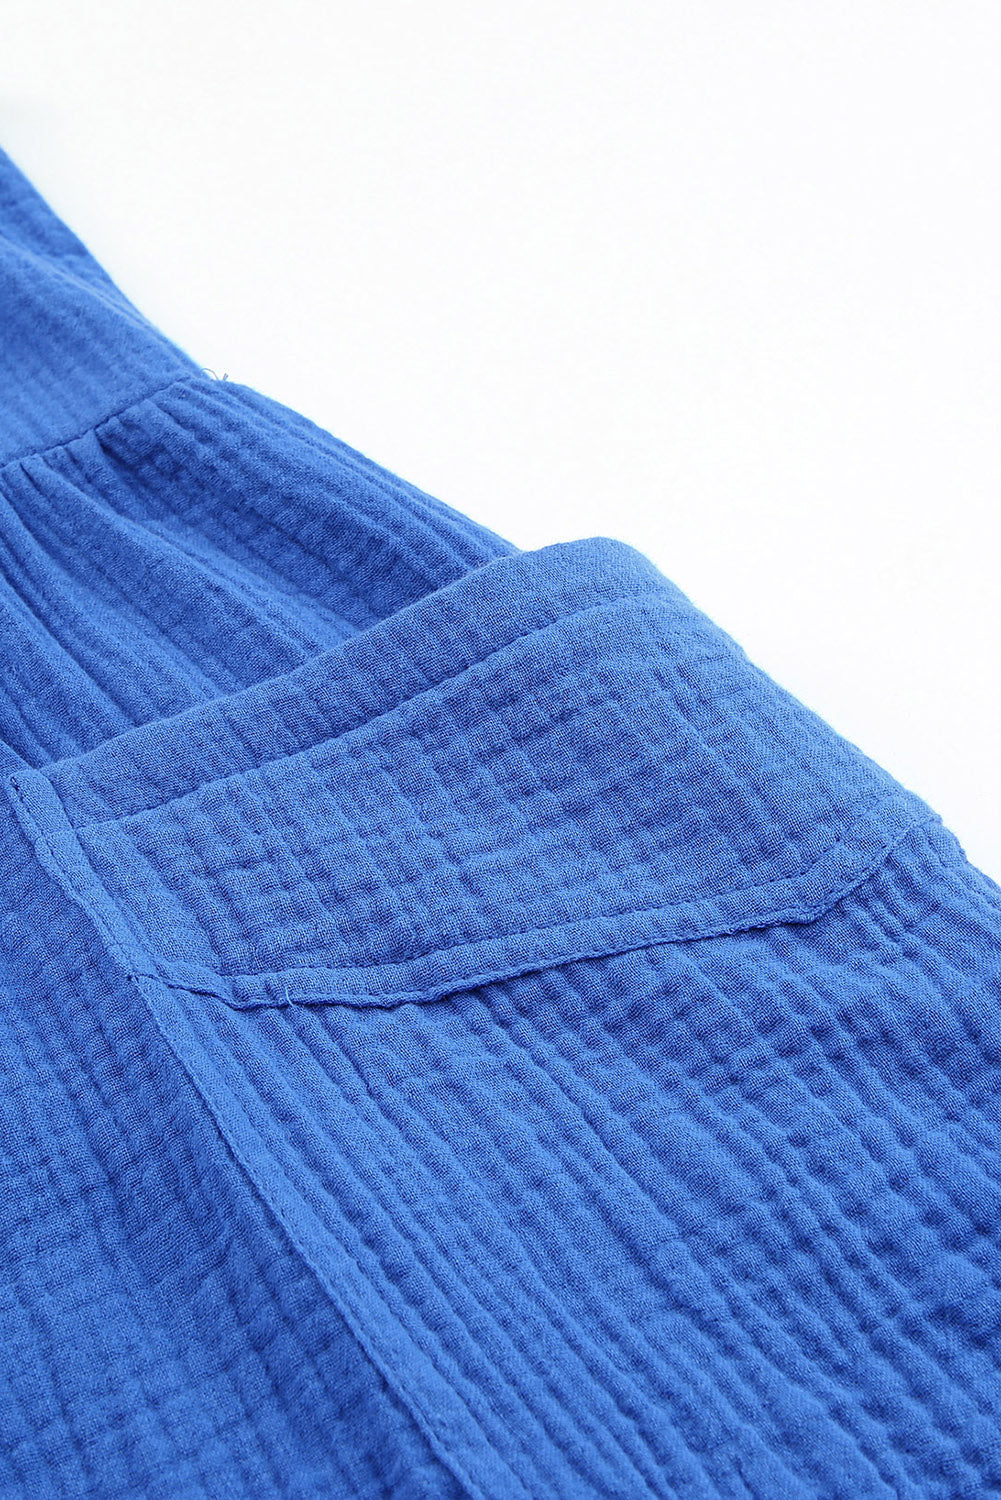 Barboteuse bleue texturée à bretelles nouées, taille haute, jambes larges